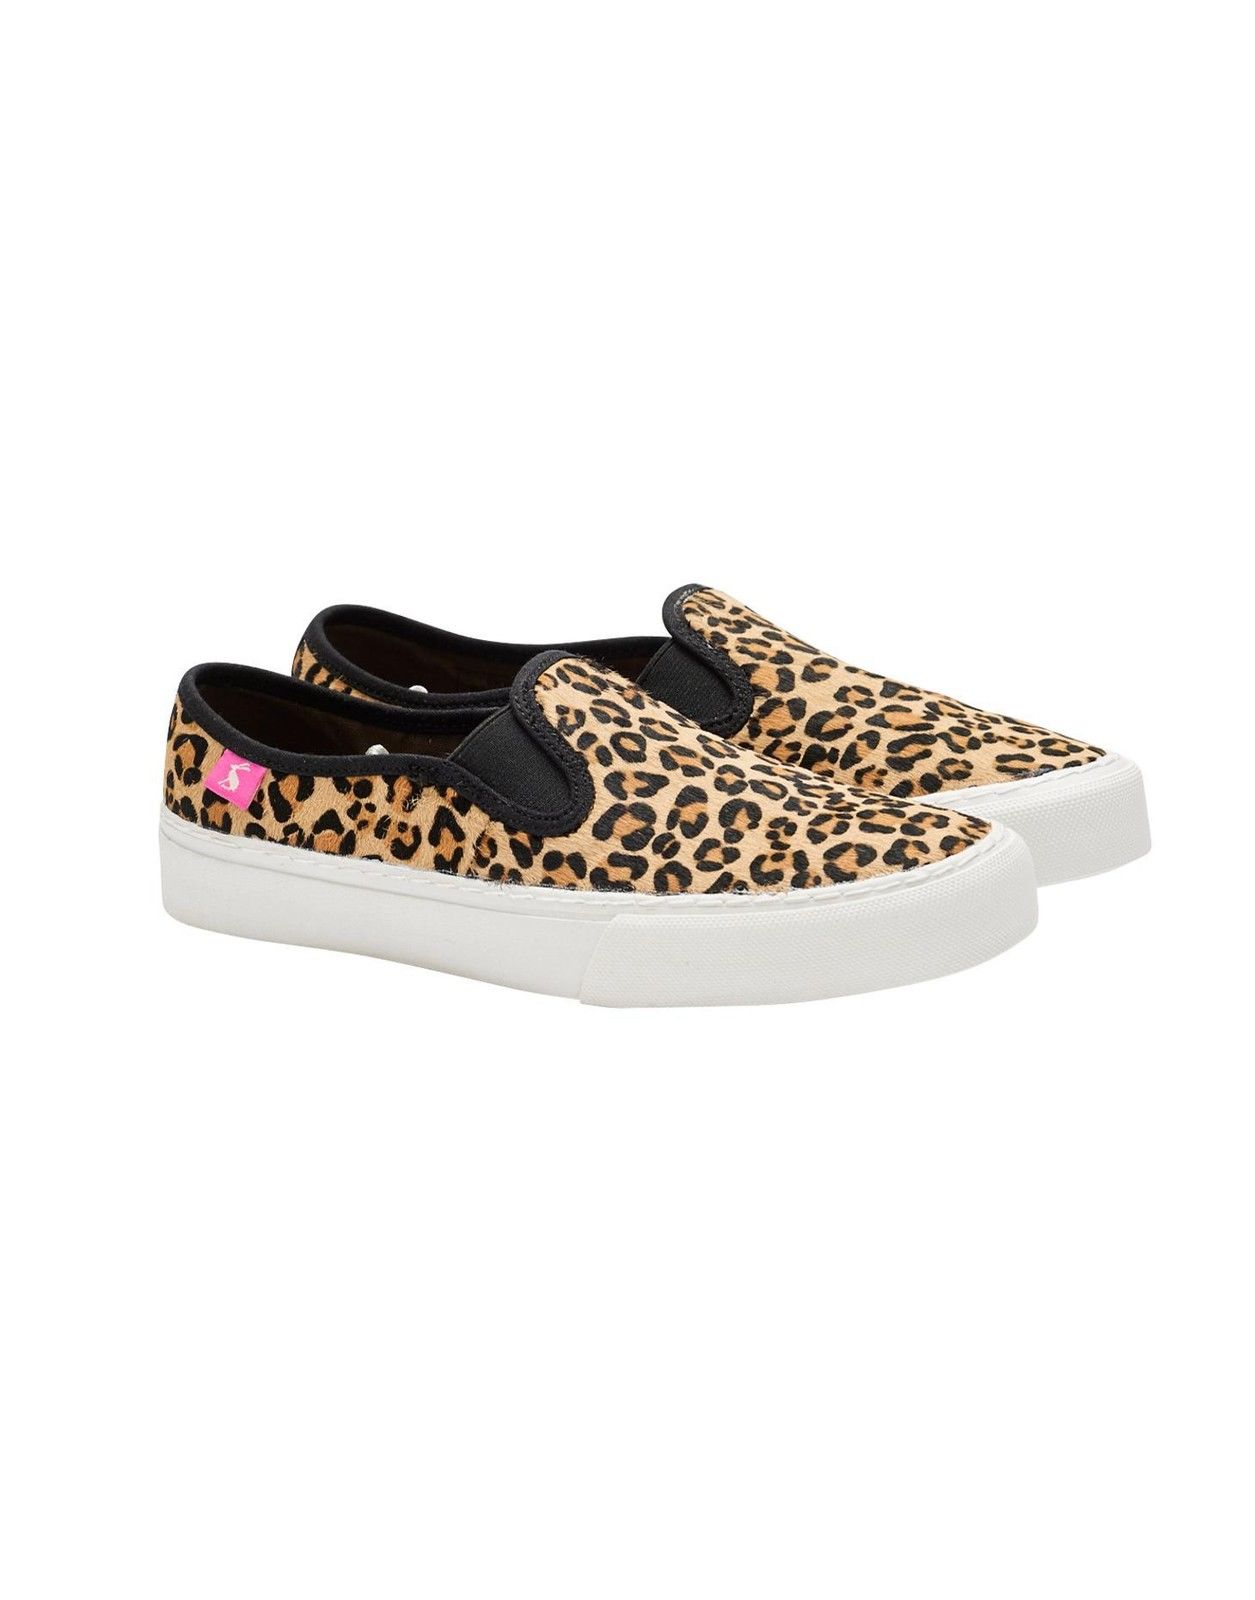 joules leopard print shoes